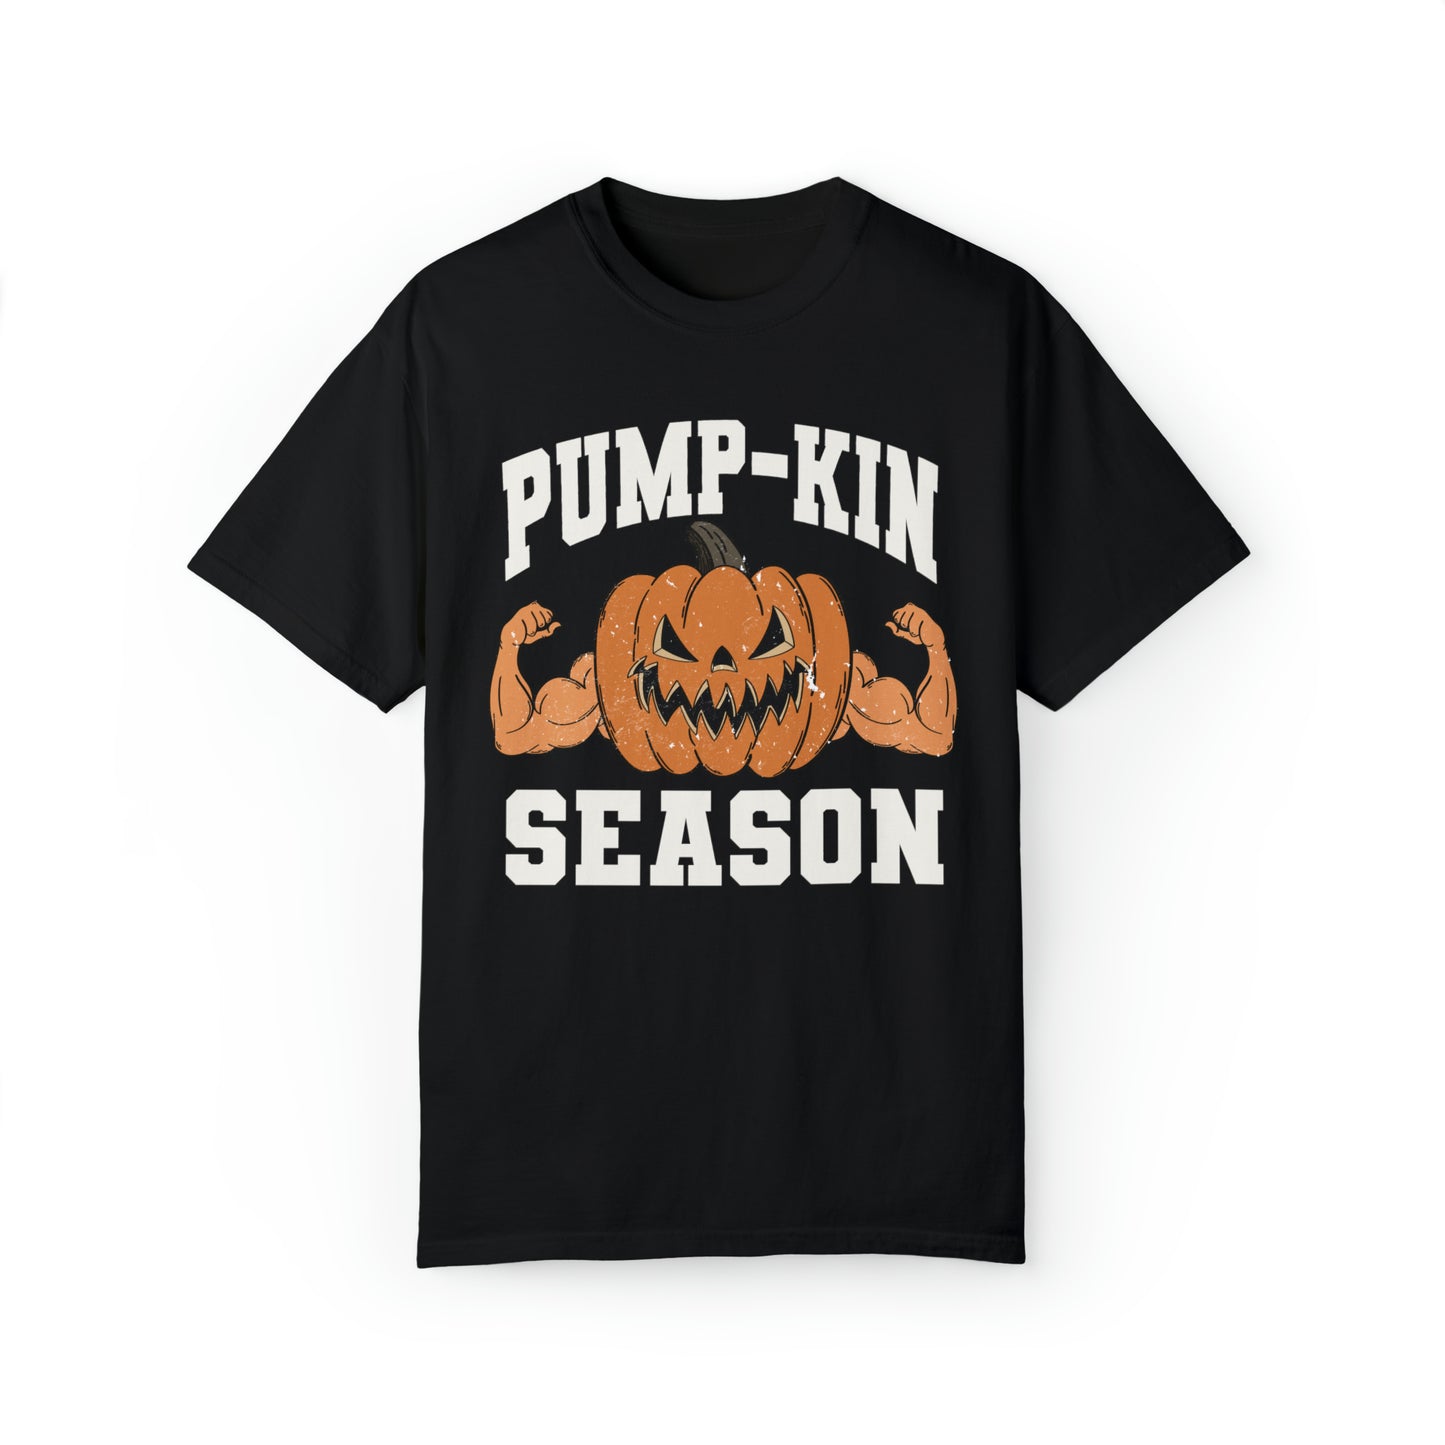 Pump-Kin Season Shirt